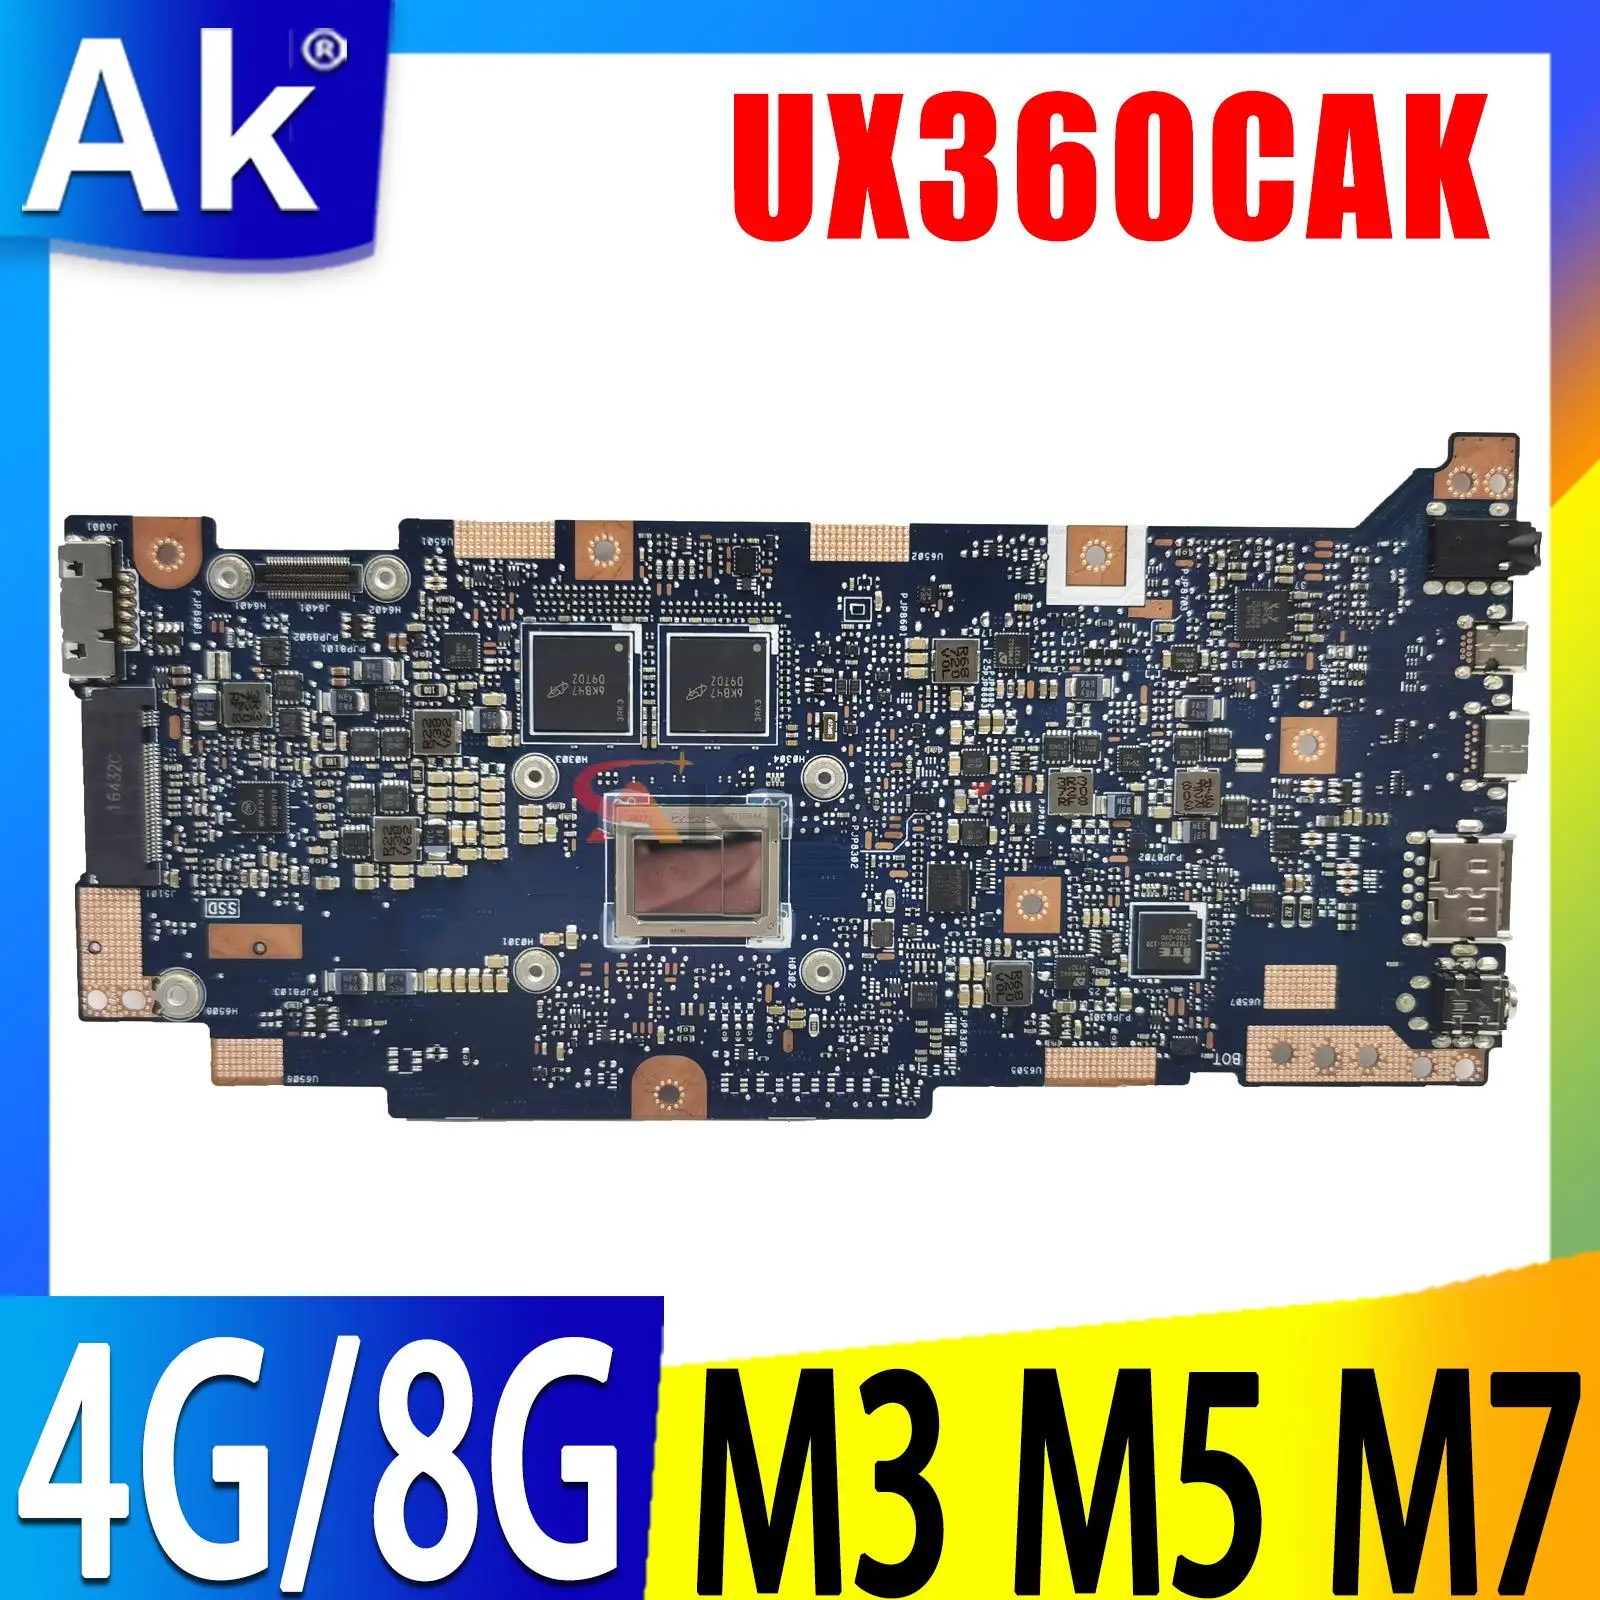 

UX360CAK Laptop Motherboard M3-6Y30 M5-6Y54 i5-7Y54 M7-6Y75 i7-7Y75 CPU 4GB 8GB RAM For ASUS UX360C UX360CA UX360CAK Mainboard